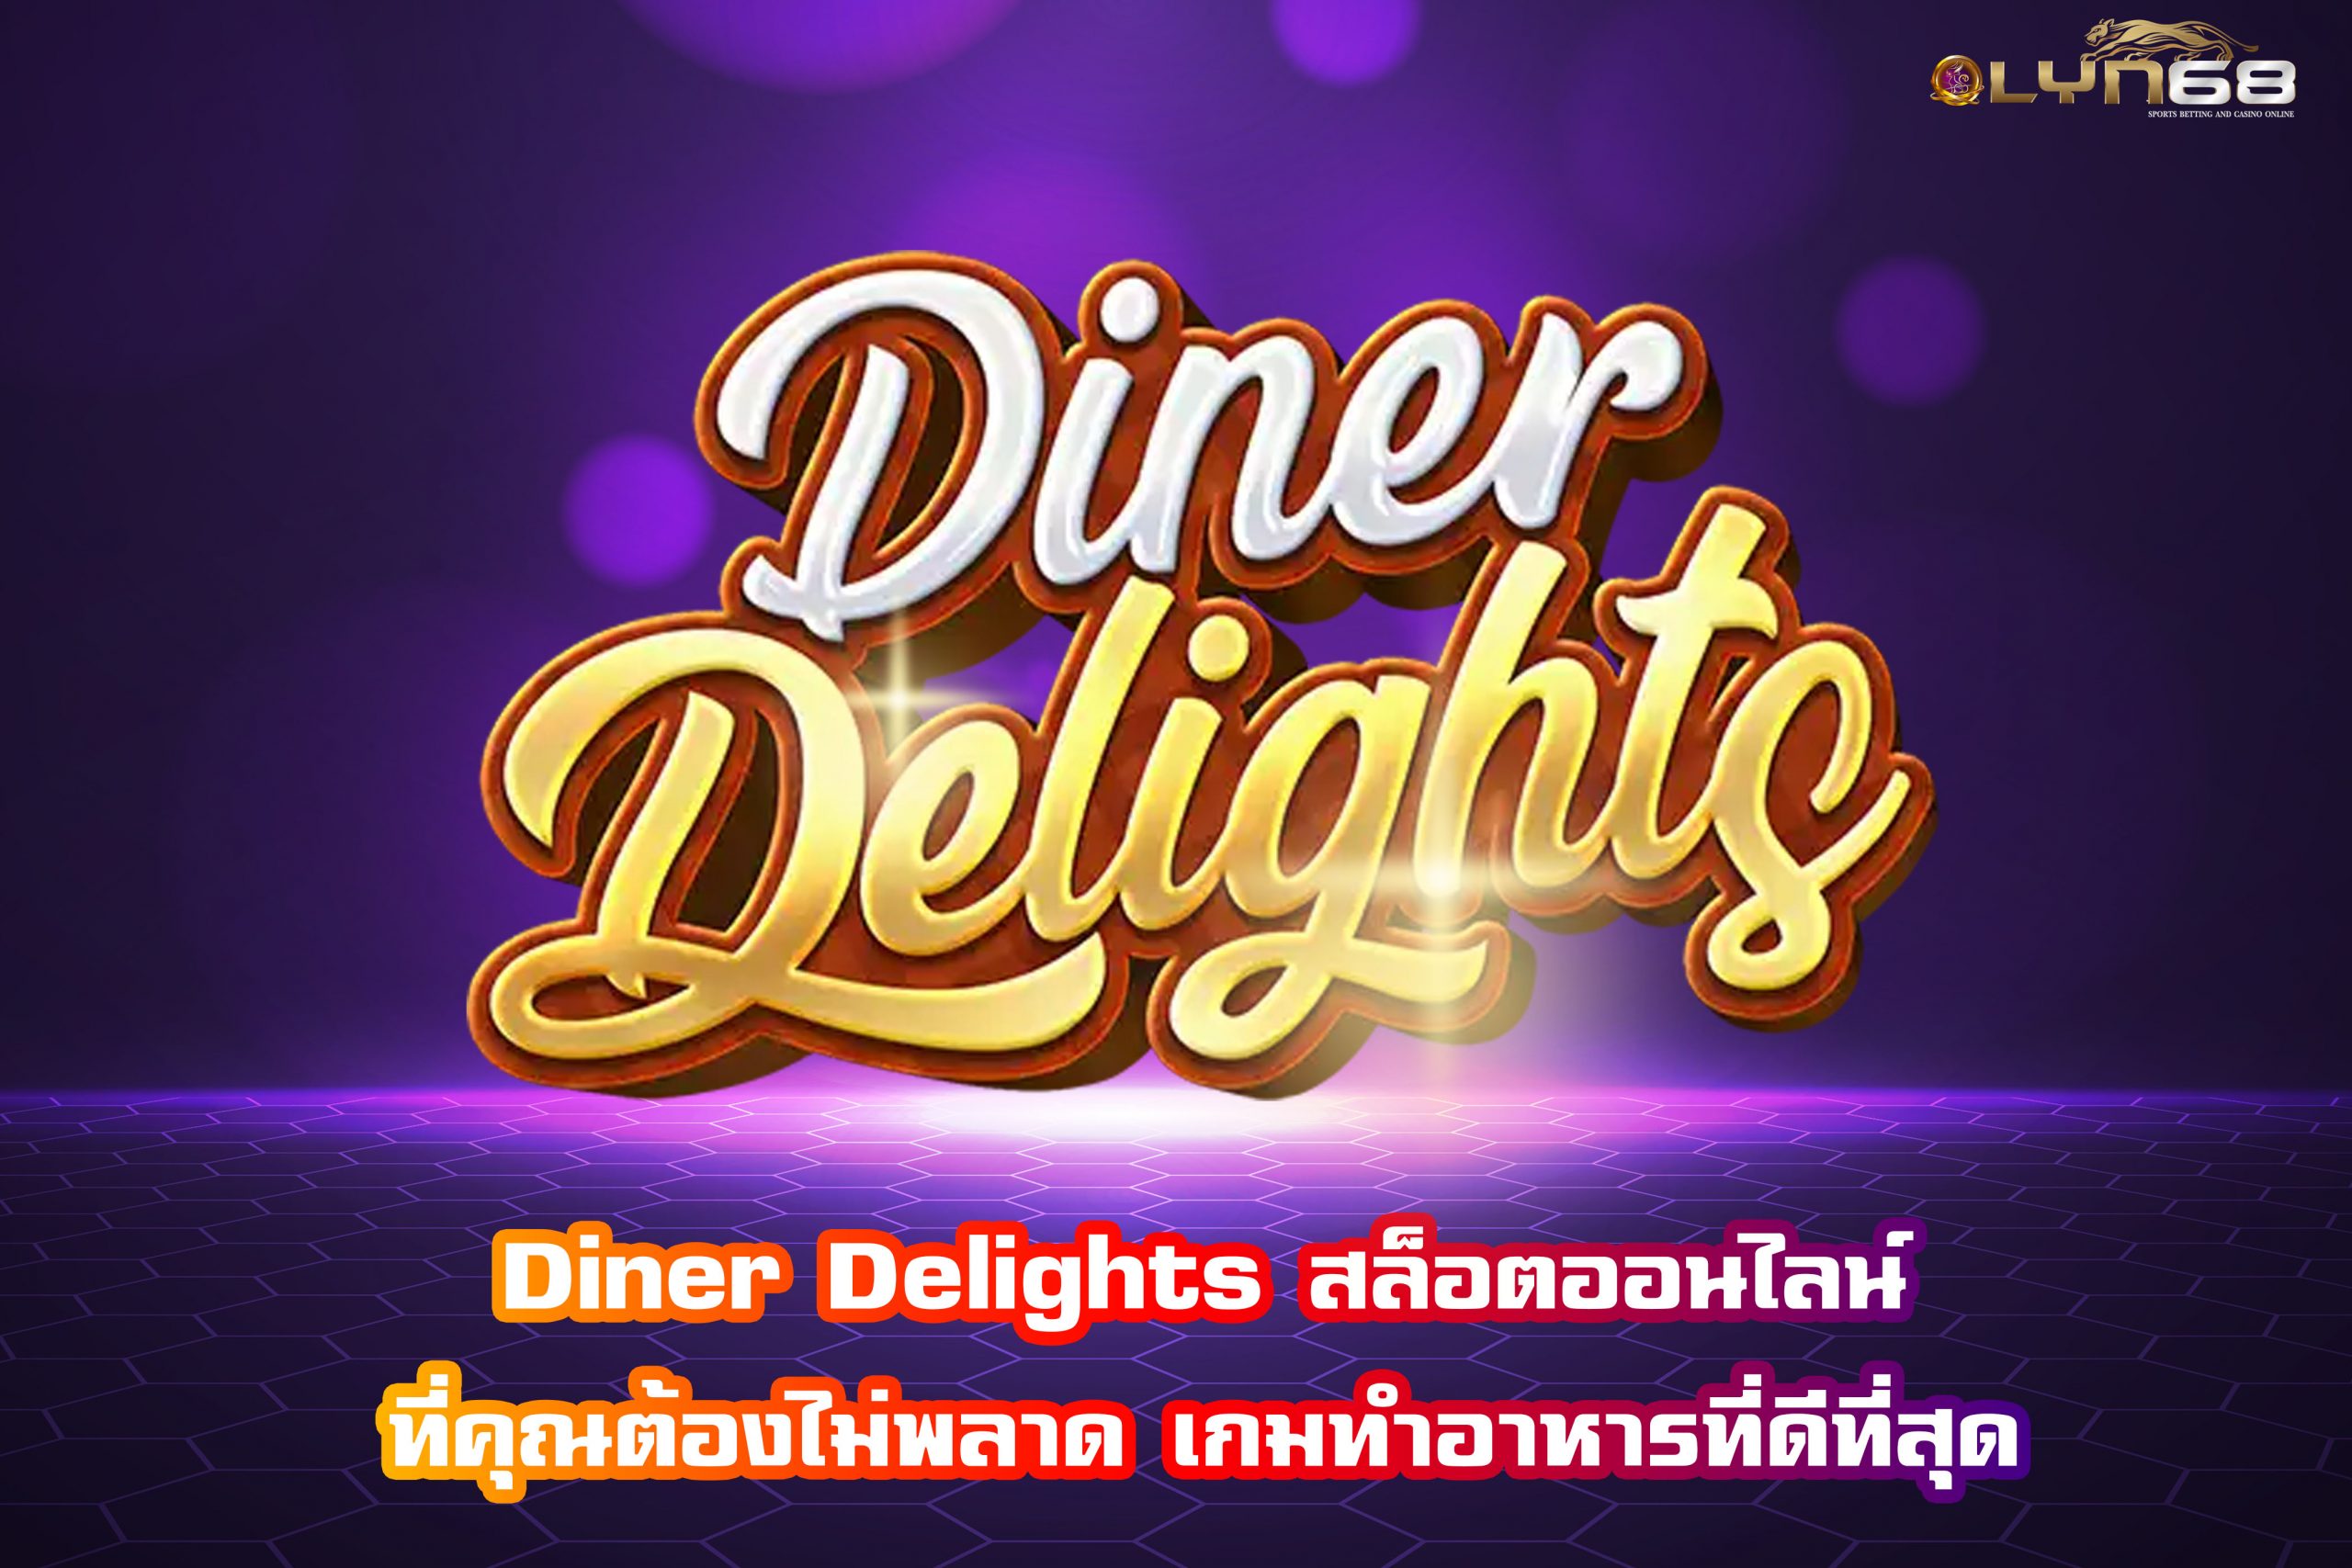 Diner Delights สล็อตออนไลน์ที่คุณต้องไม่พลาด เกมทำอาหารที่ดีที่สุด